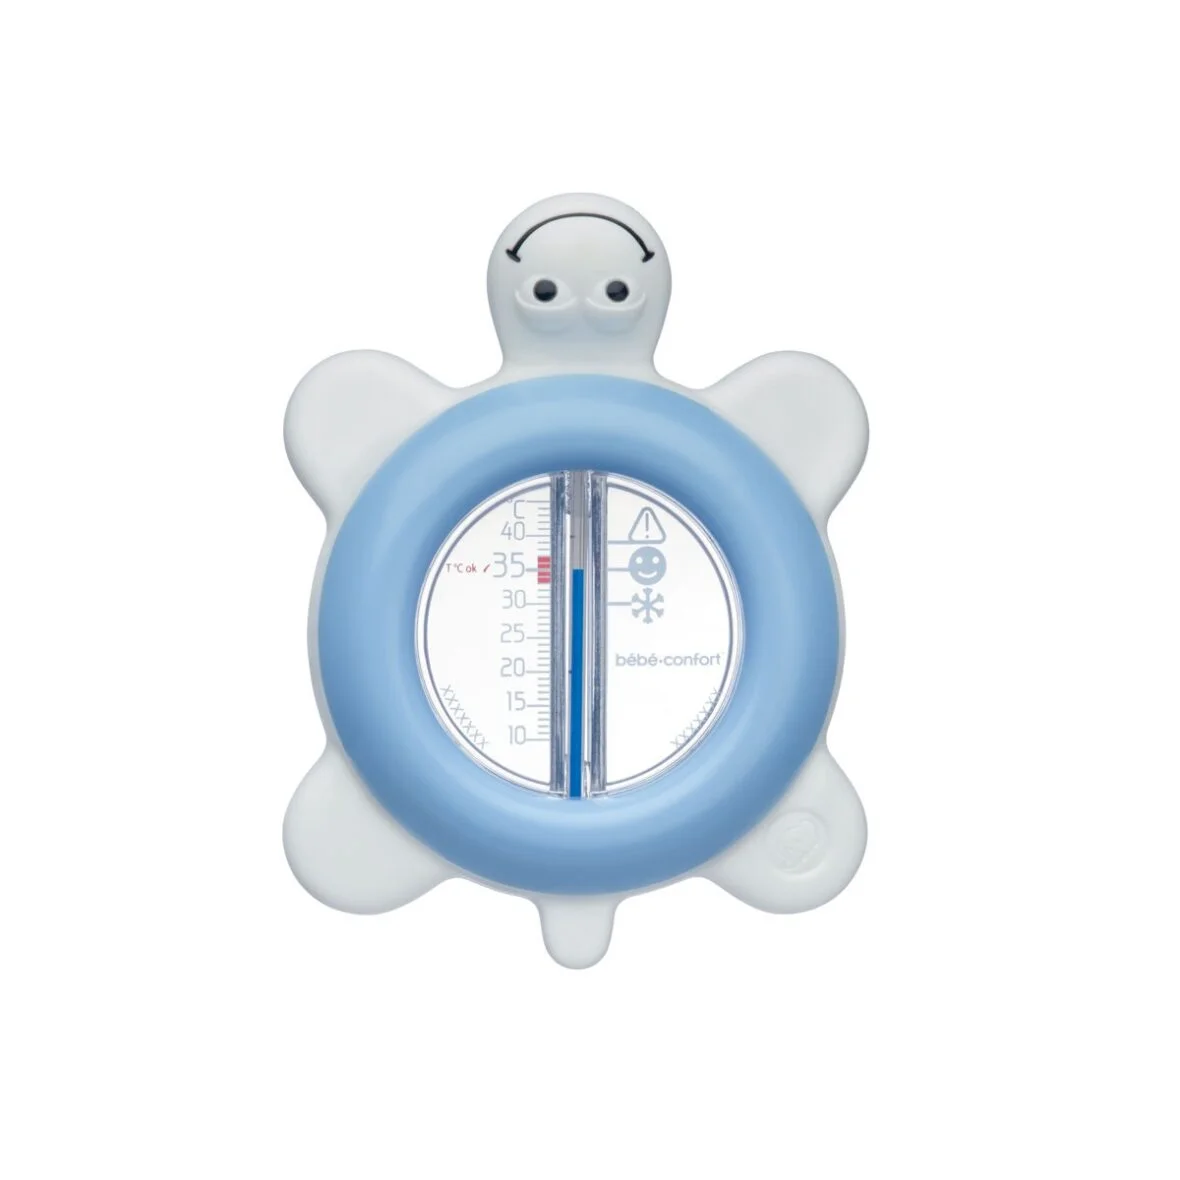 Thermometre de bain pour bébé